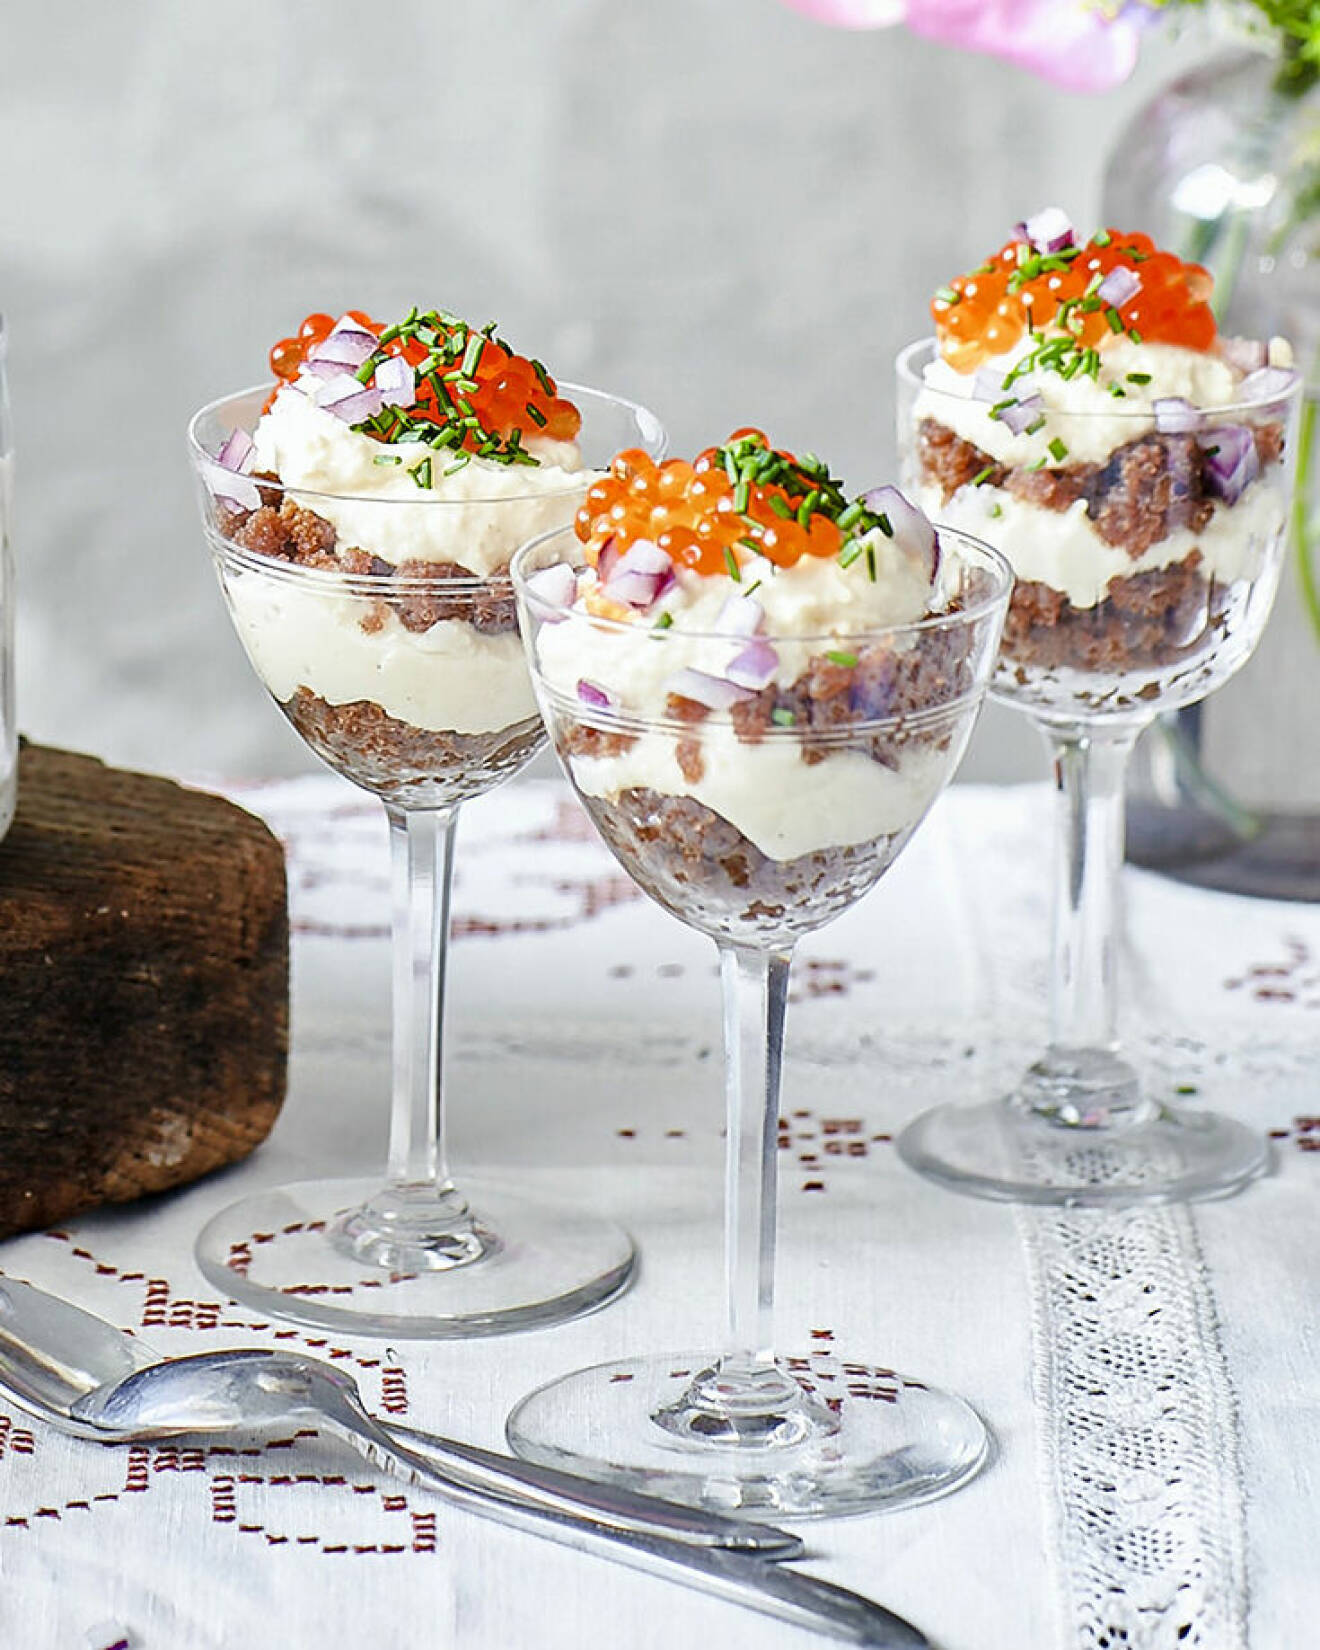 Läcker cheesecake i glas med Västerbottenskräm och regnbågslaxrom